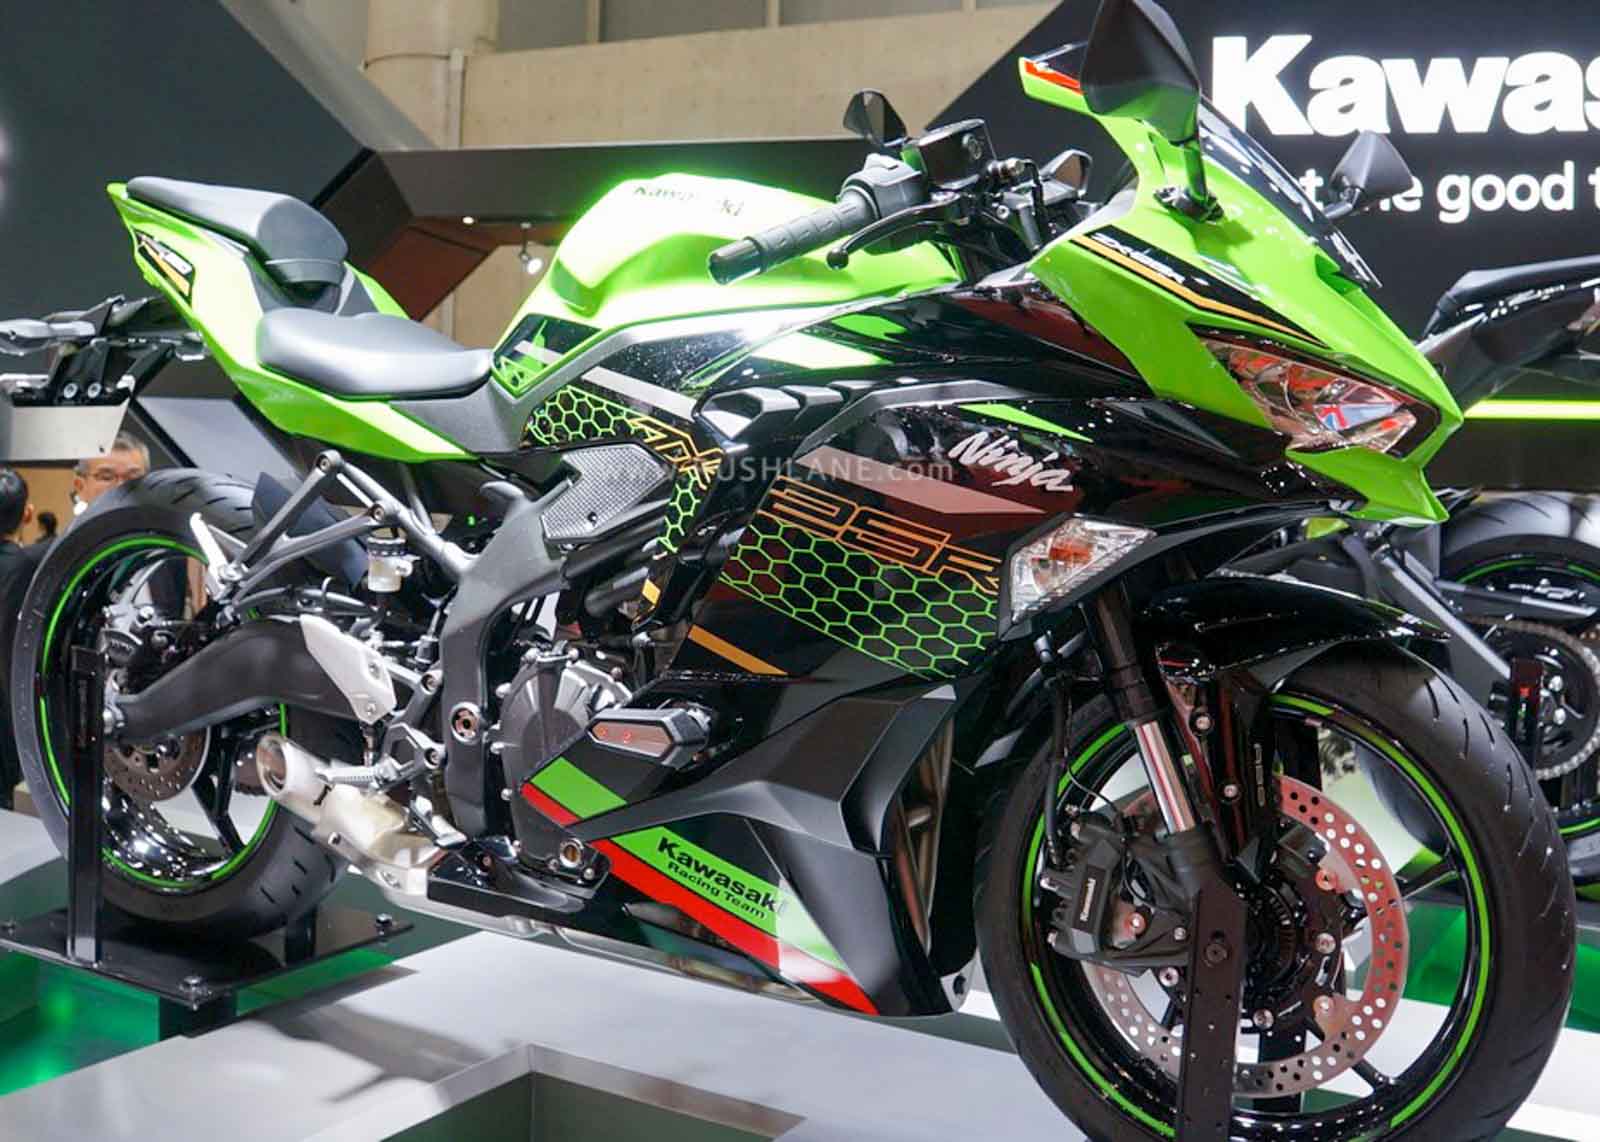 Kawasaki Zx25r 2020 Price In India